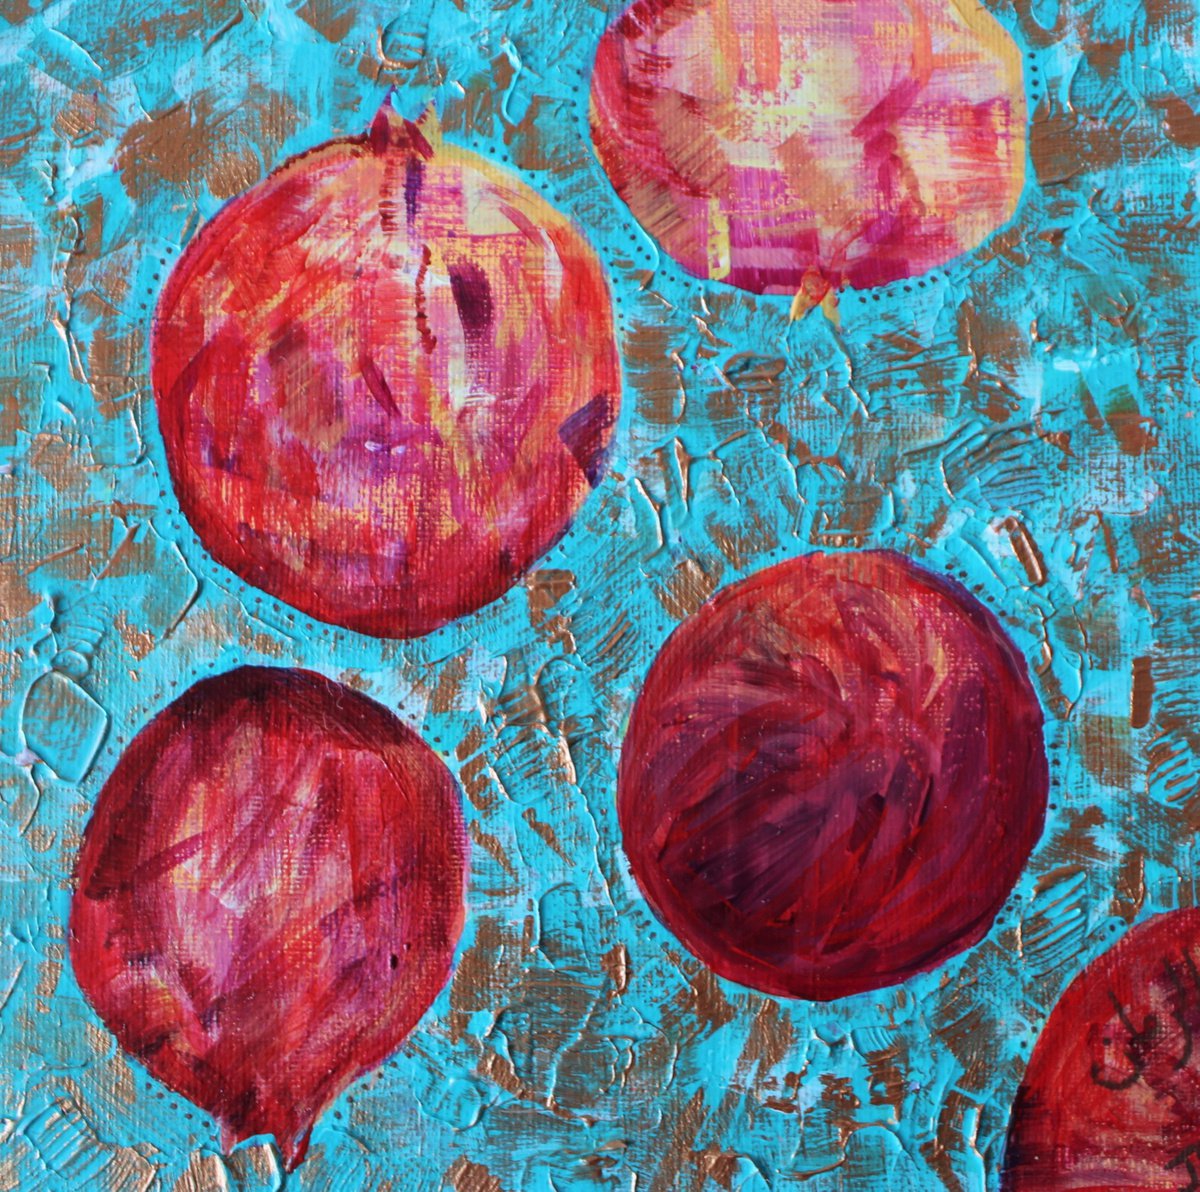 Al-Ruman (The Pomegranate) by Julia Preston